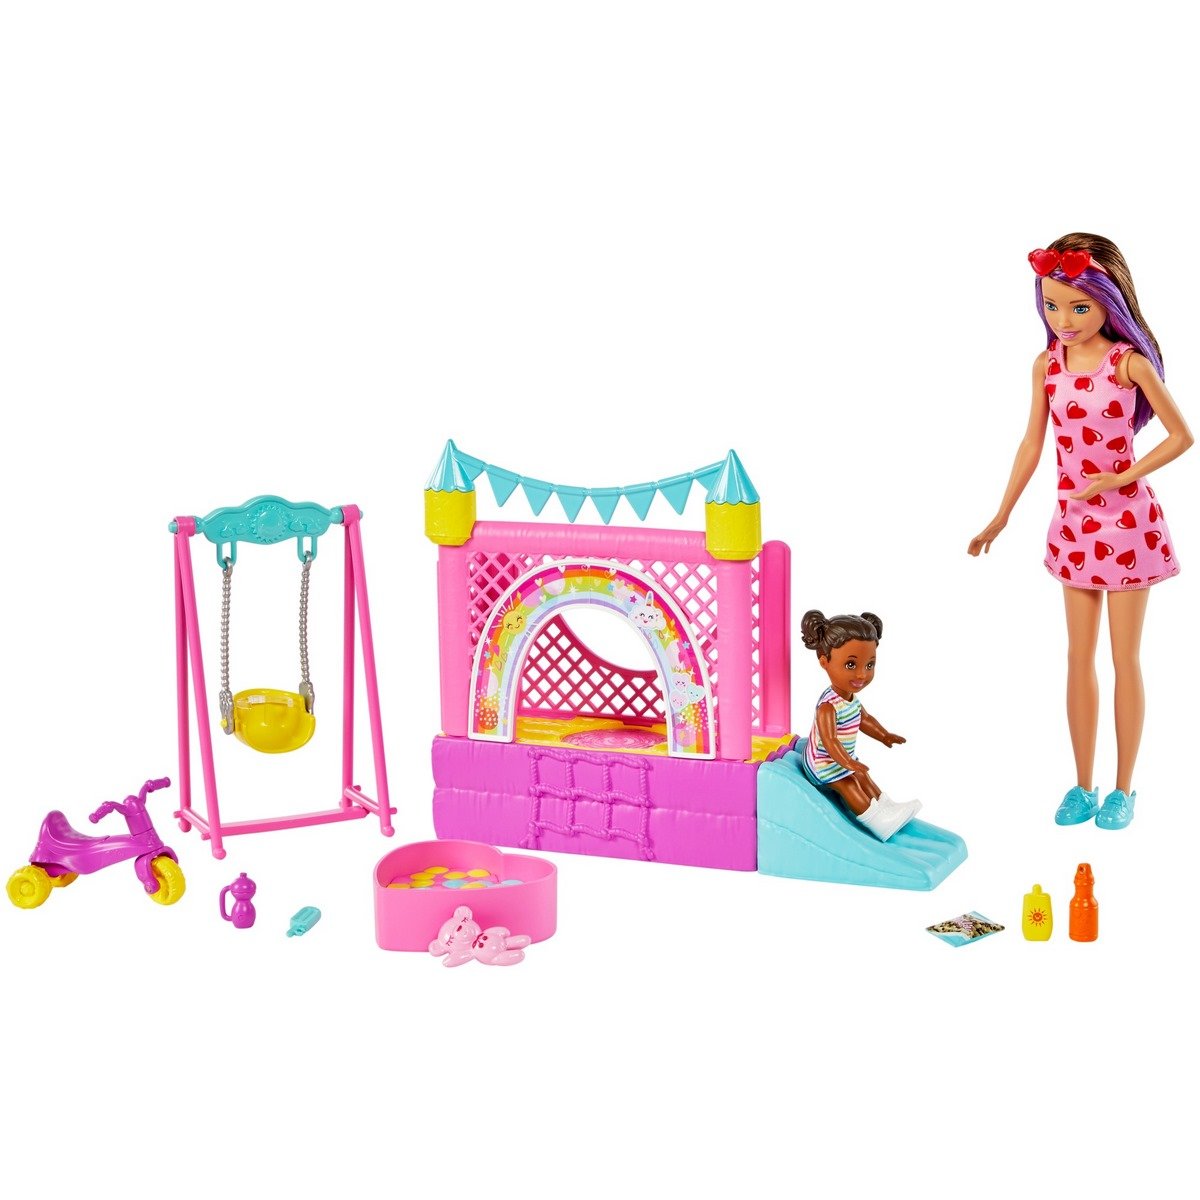 Barbie Famille coffret Piscine avec poupée Skipper baby-sitter;